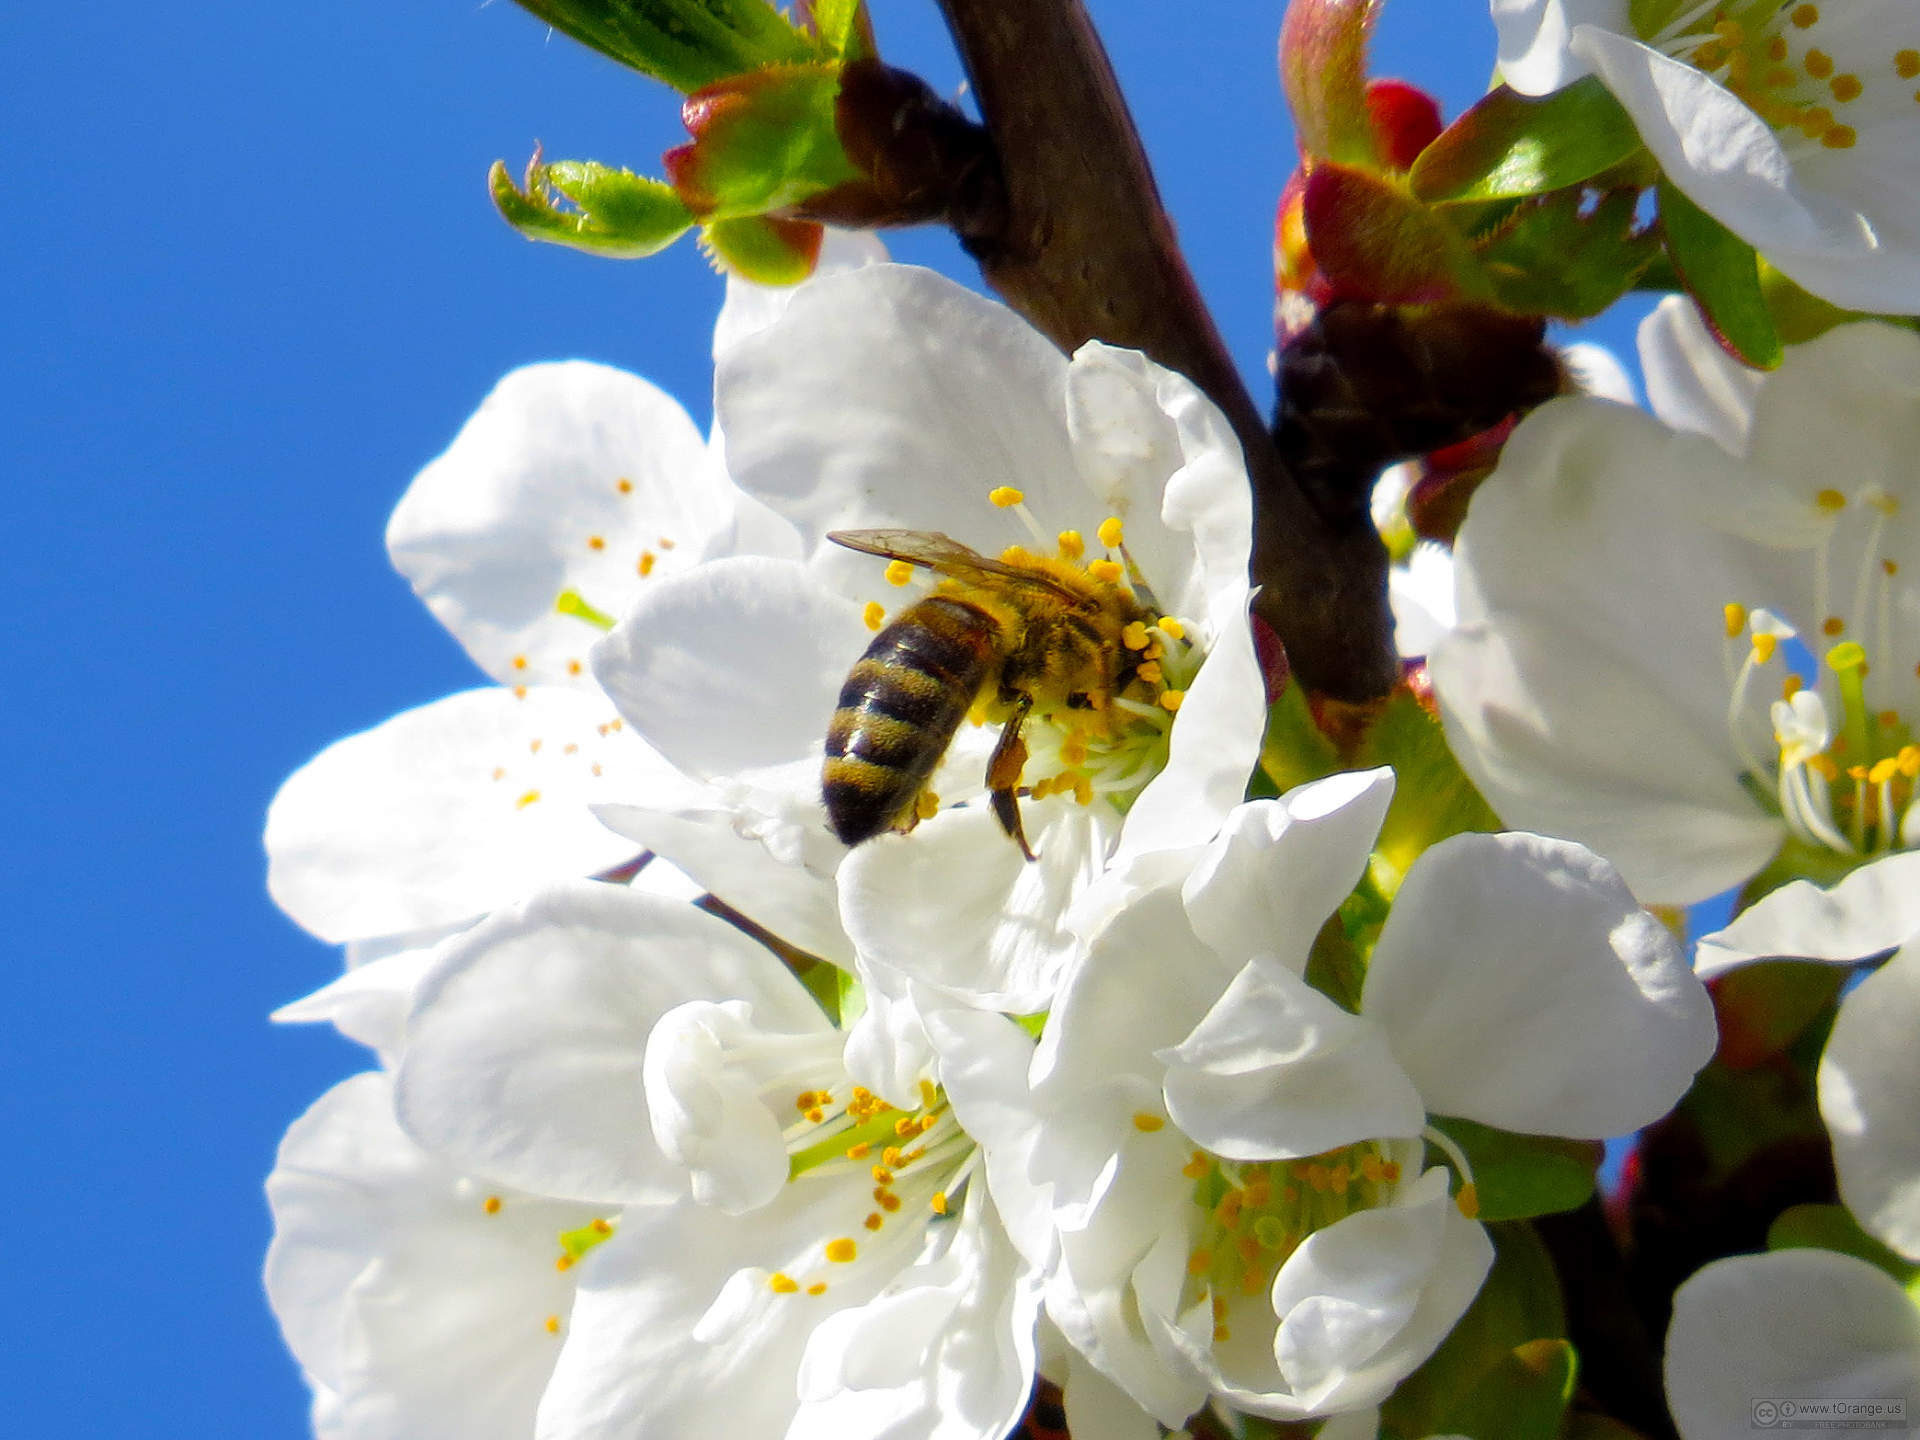 Bee-in-flower-1384347242_89.jpg